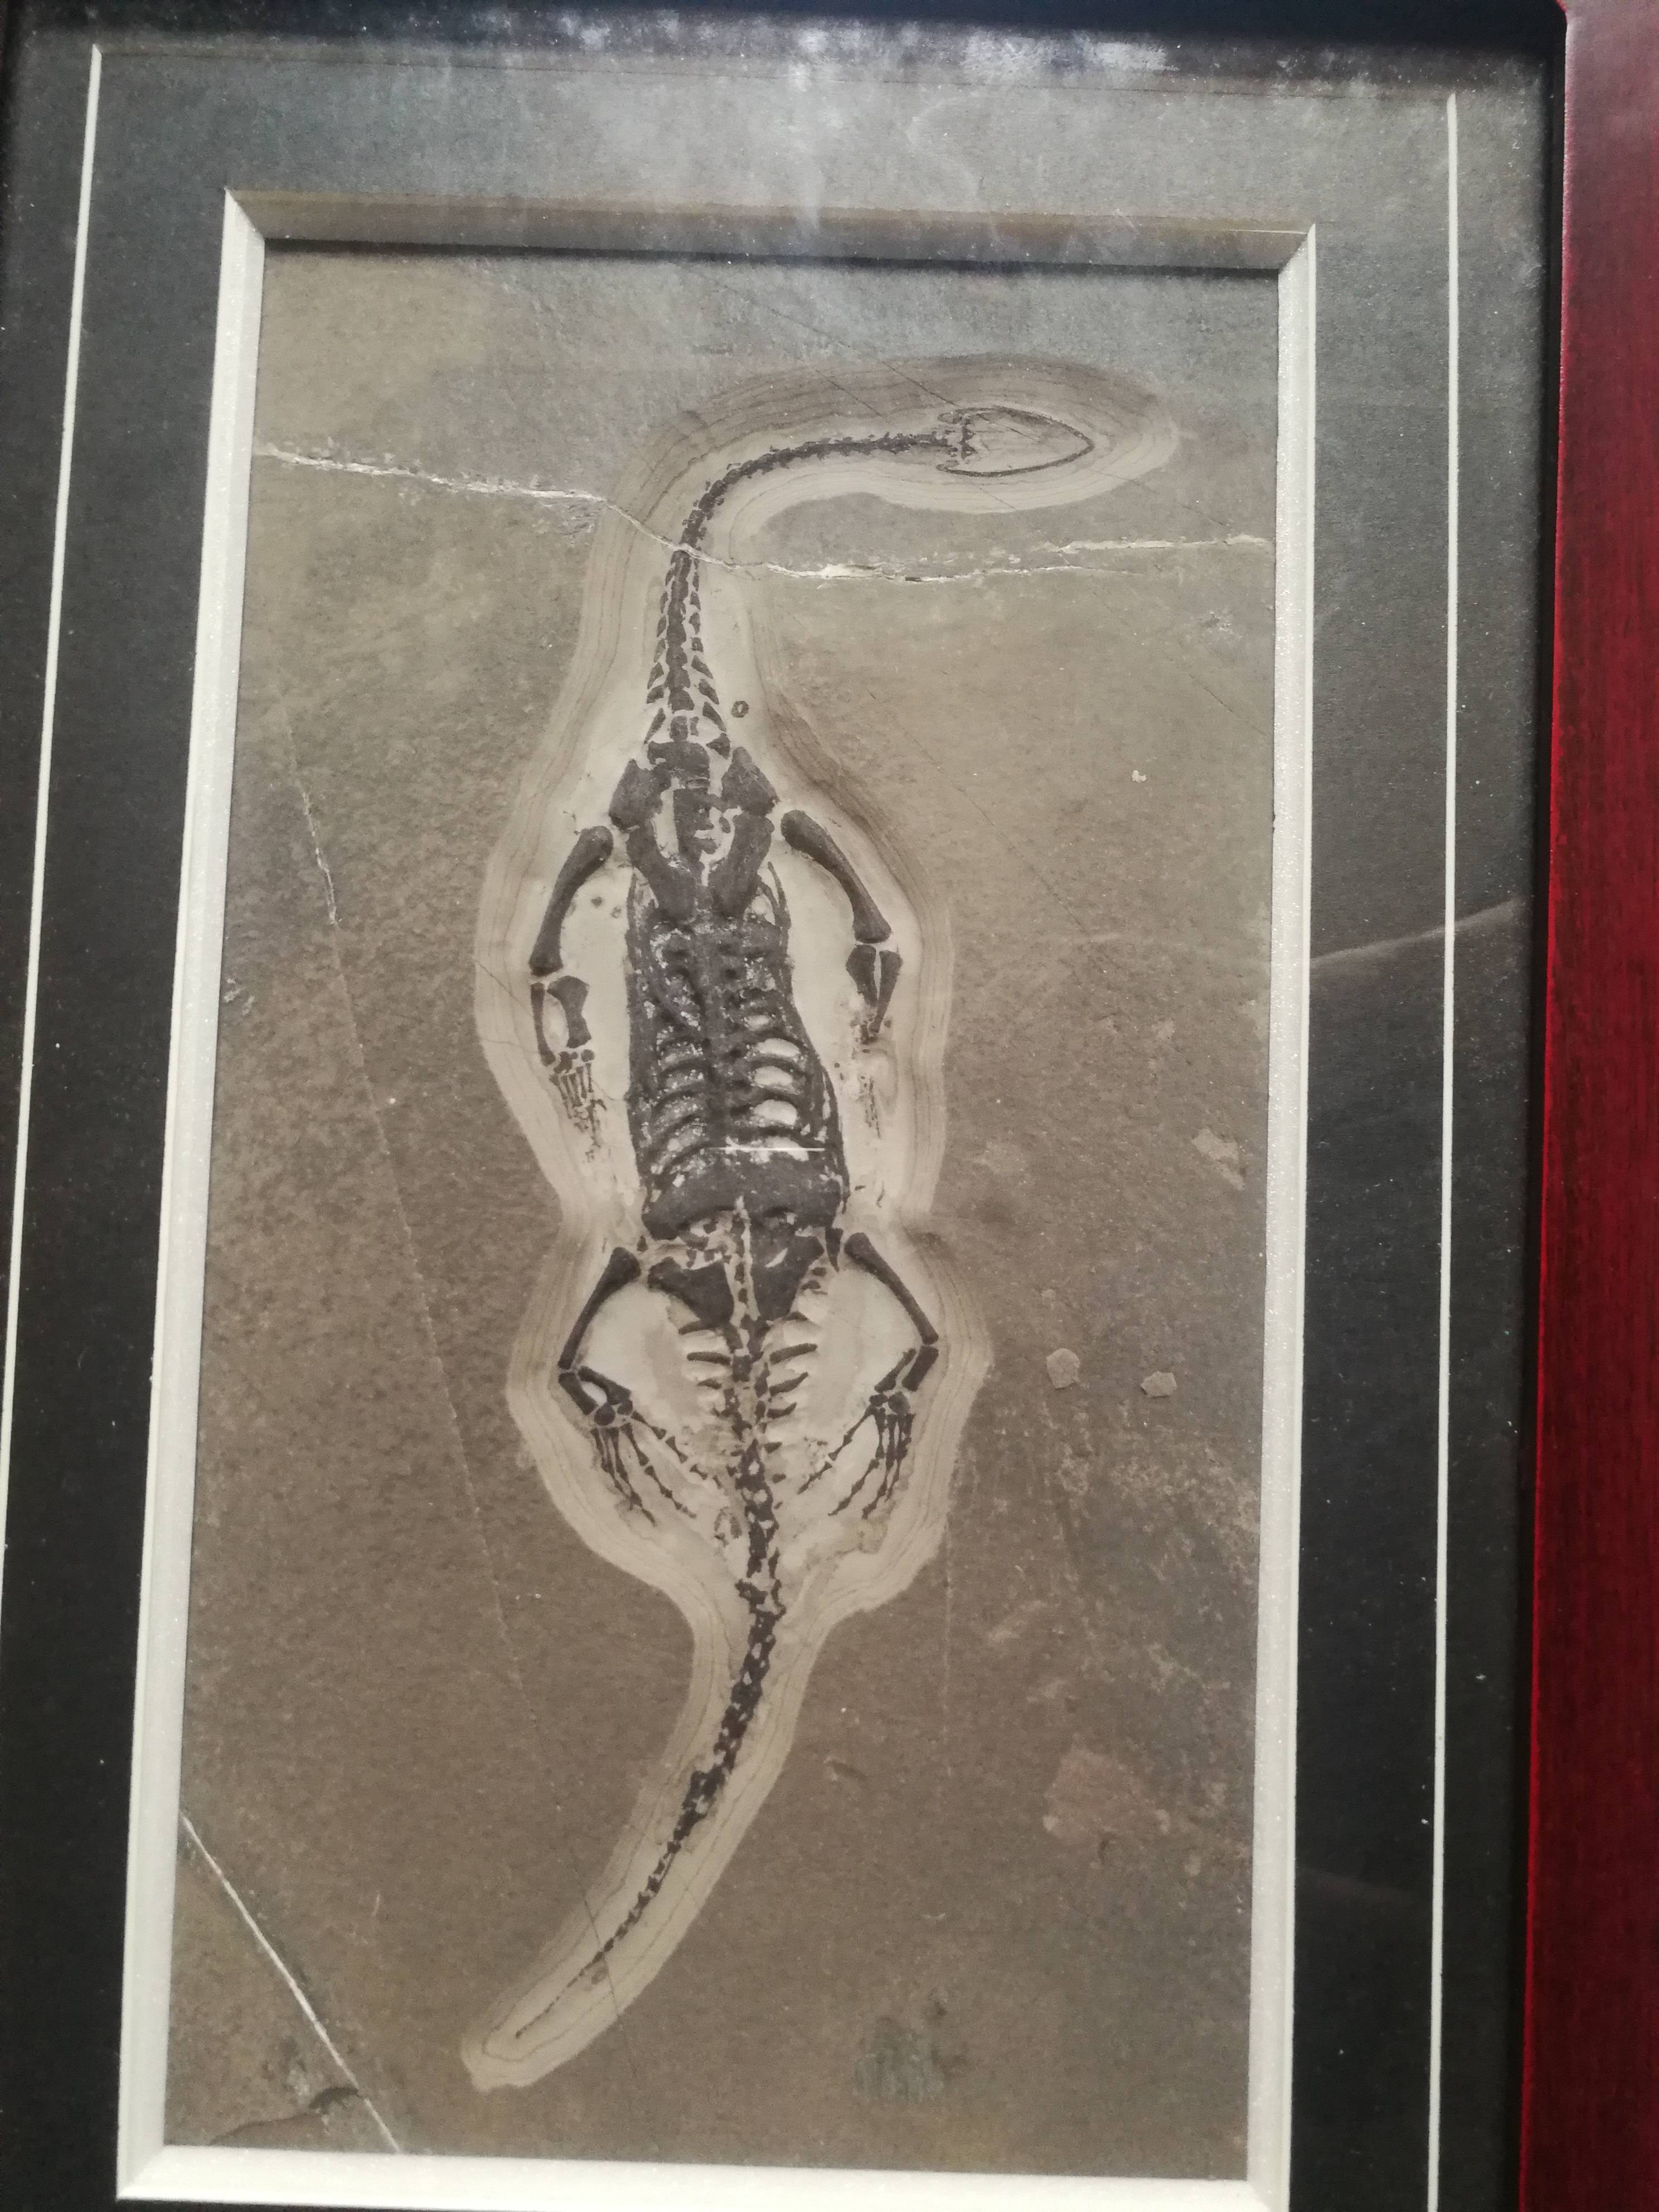 热河龙化石图片